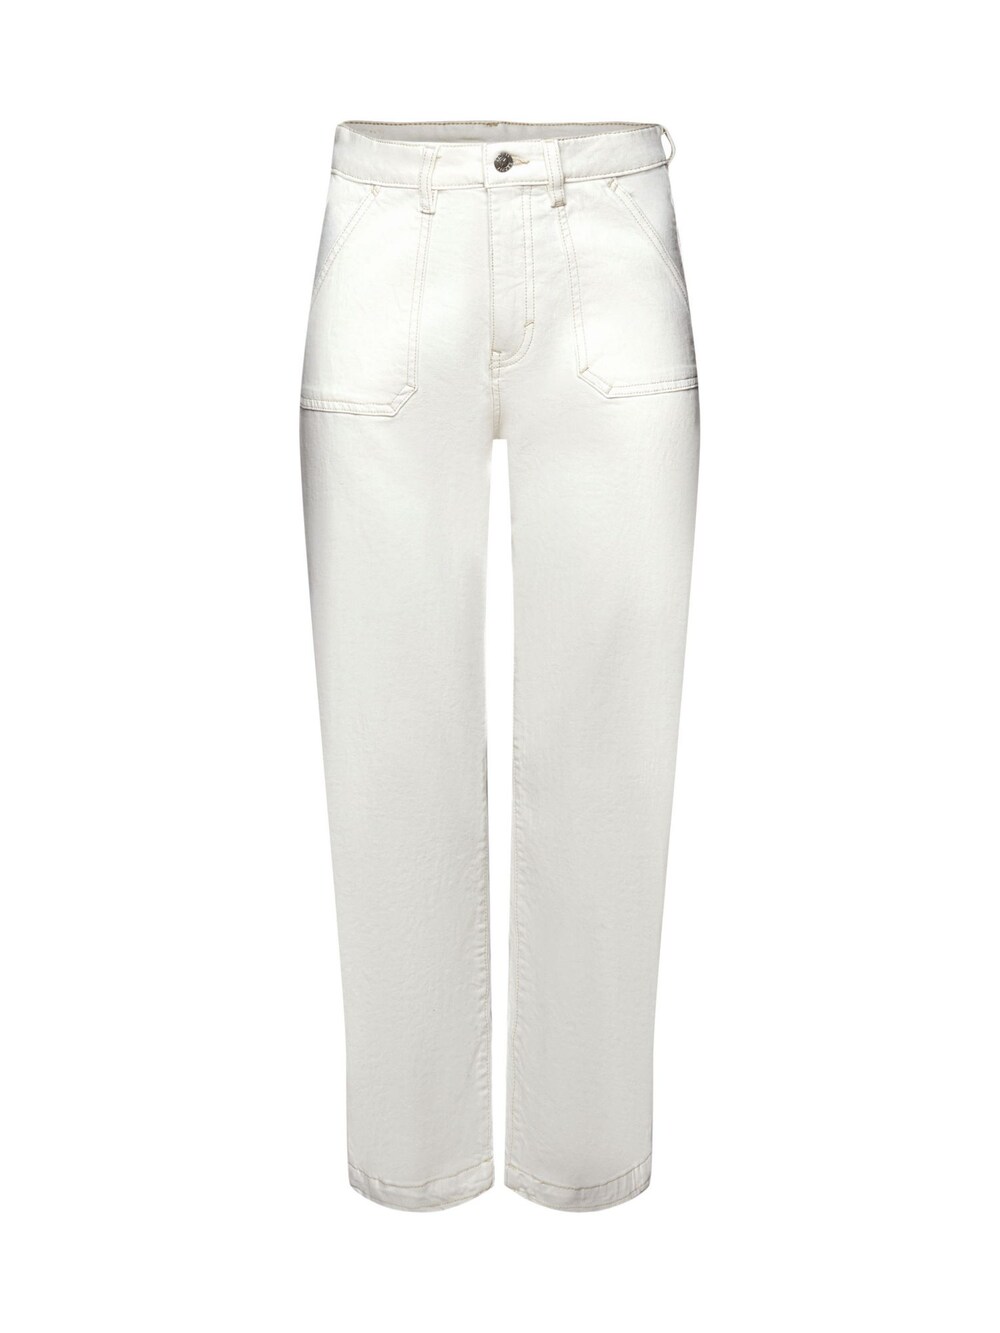 Обычные джинсы Esprit, от белого